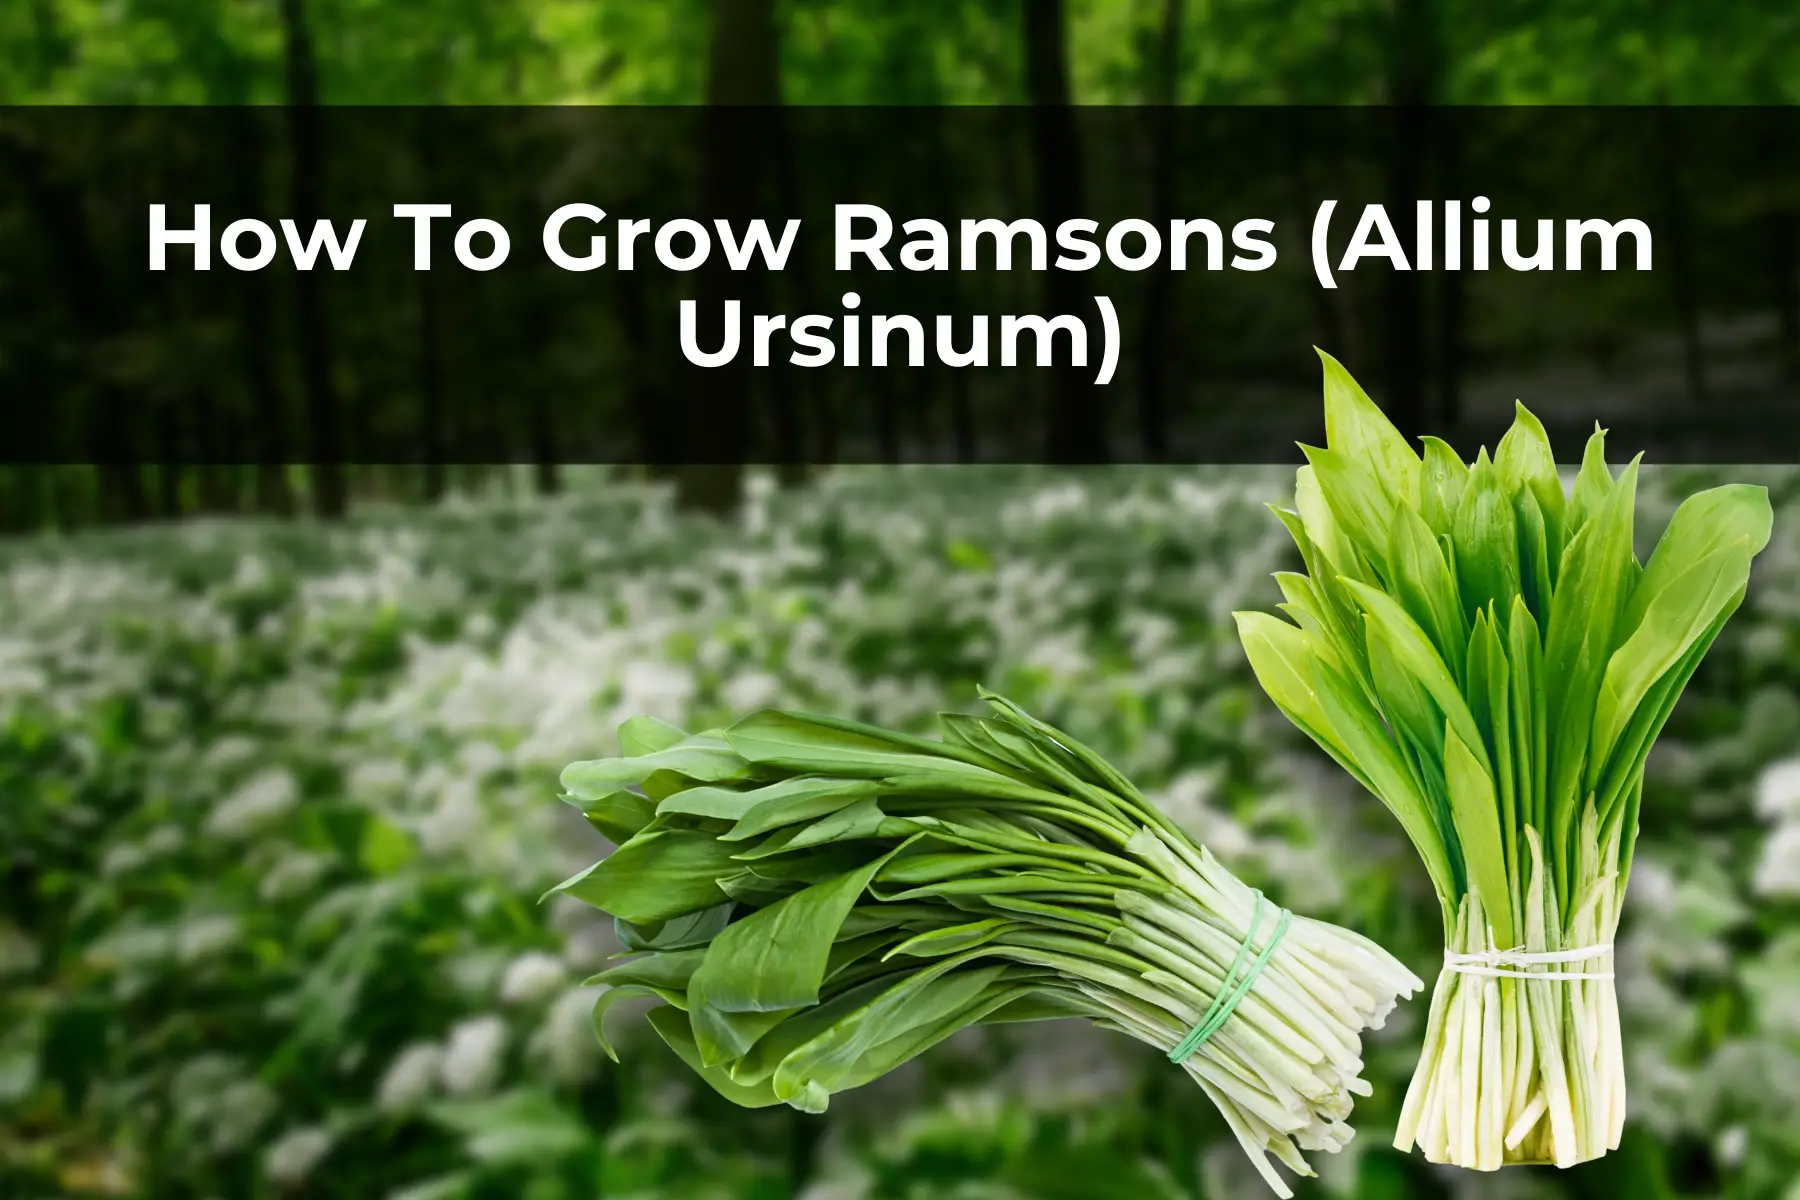 How To Grow Ramsons (Allium Ursinum)